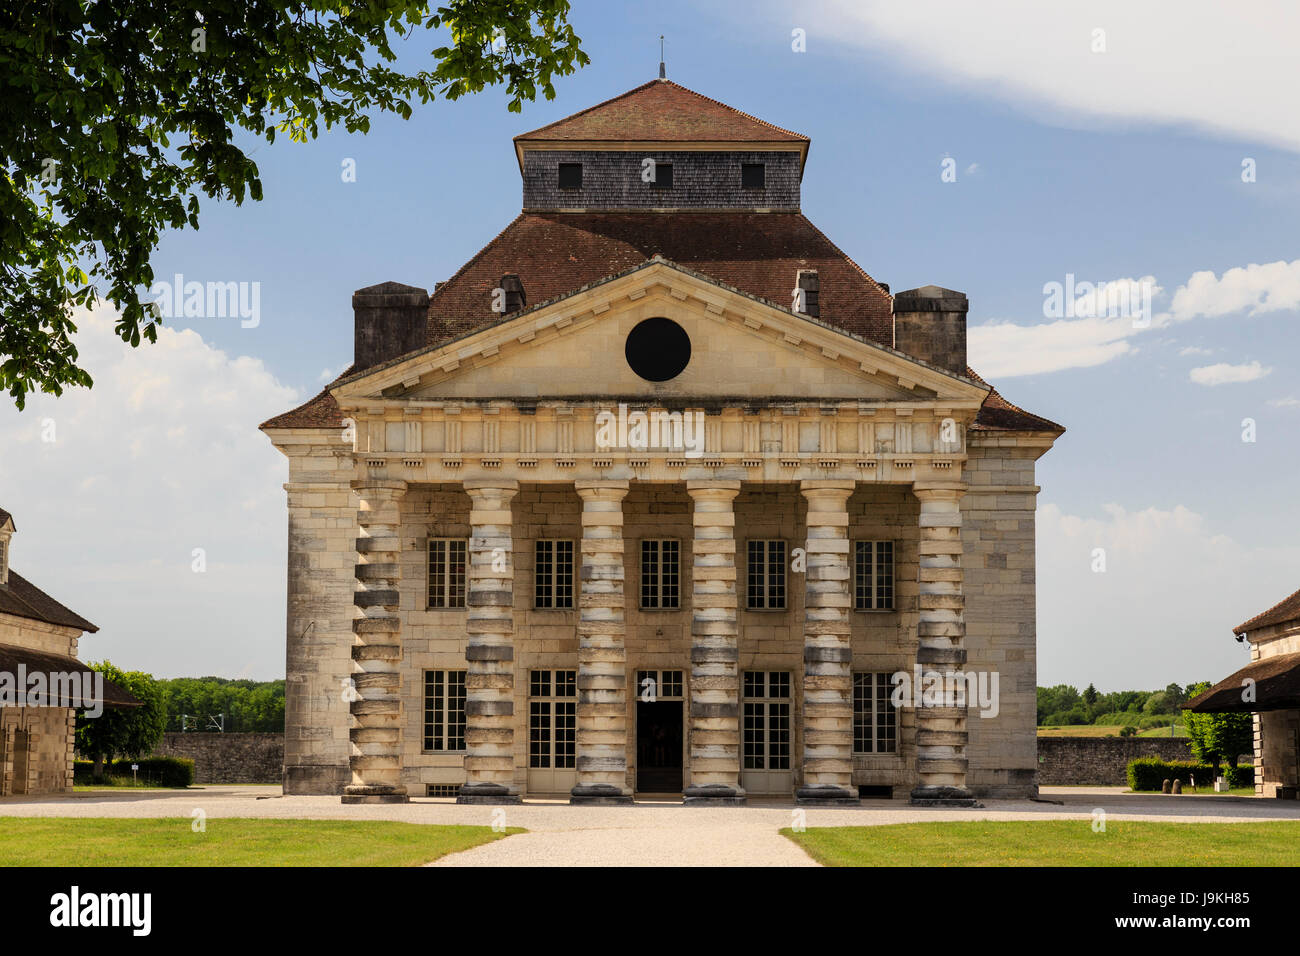 Francia, Doubs, Arc et Senans, Saline Reali di Arc et Senans, classificato come patrimonio mondiale dall'UNESCO, la casa del direttore Foto Stock